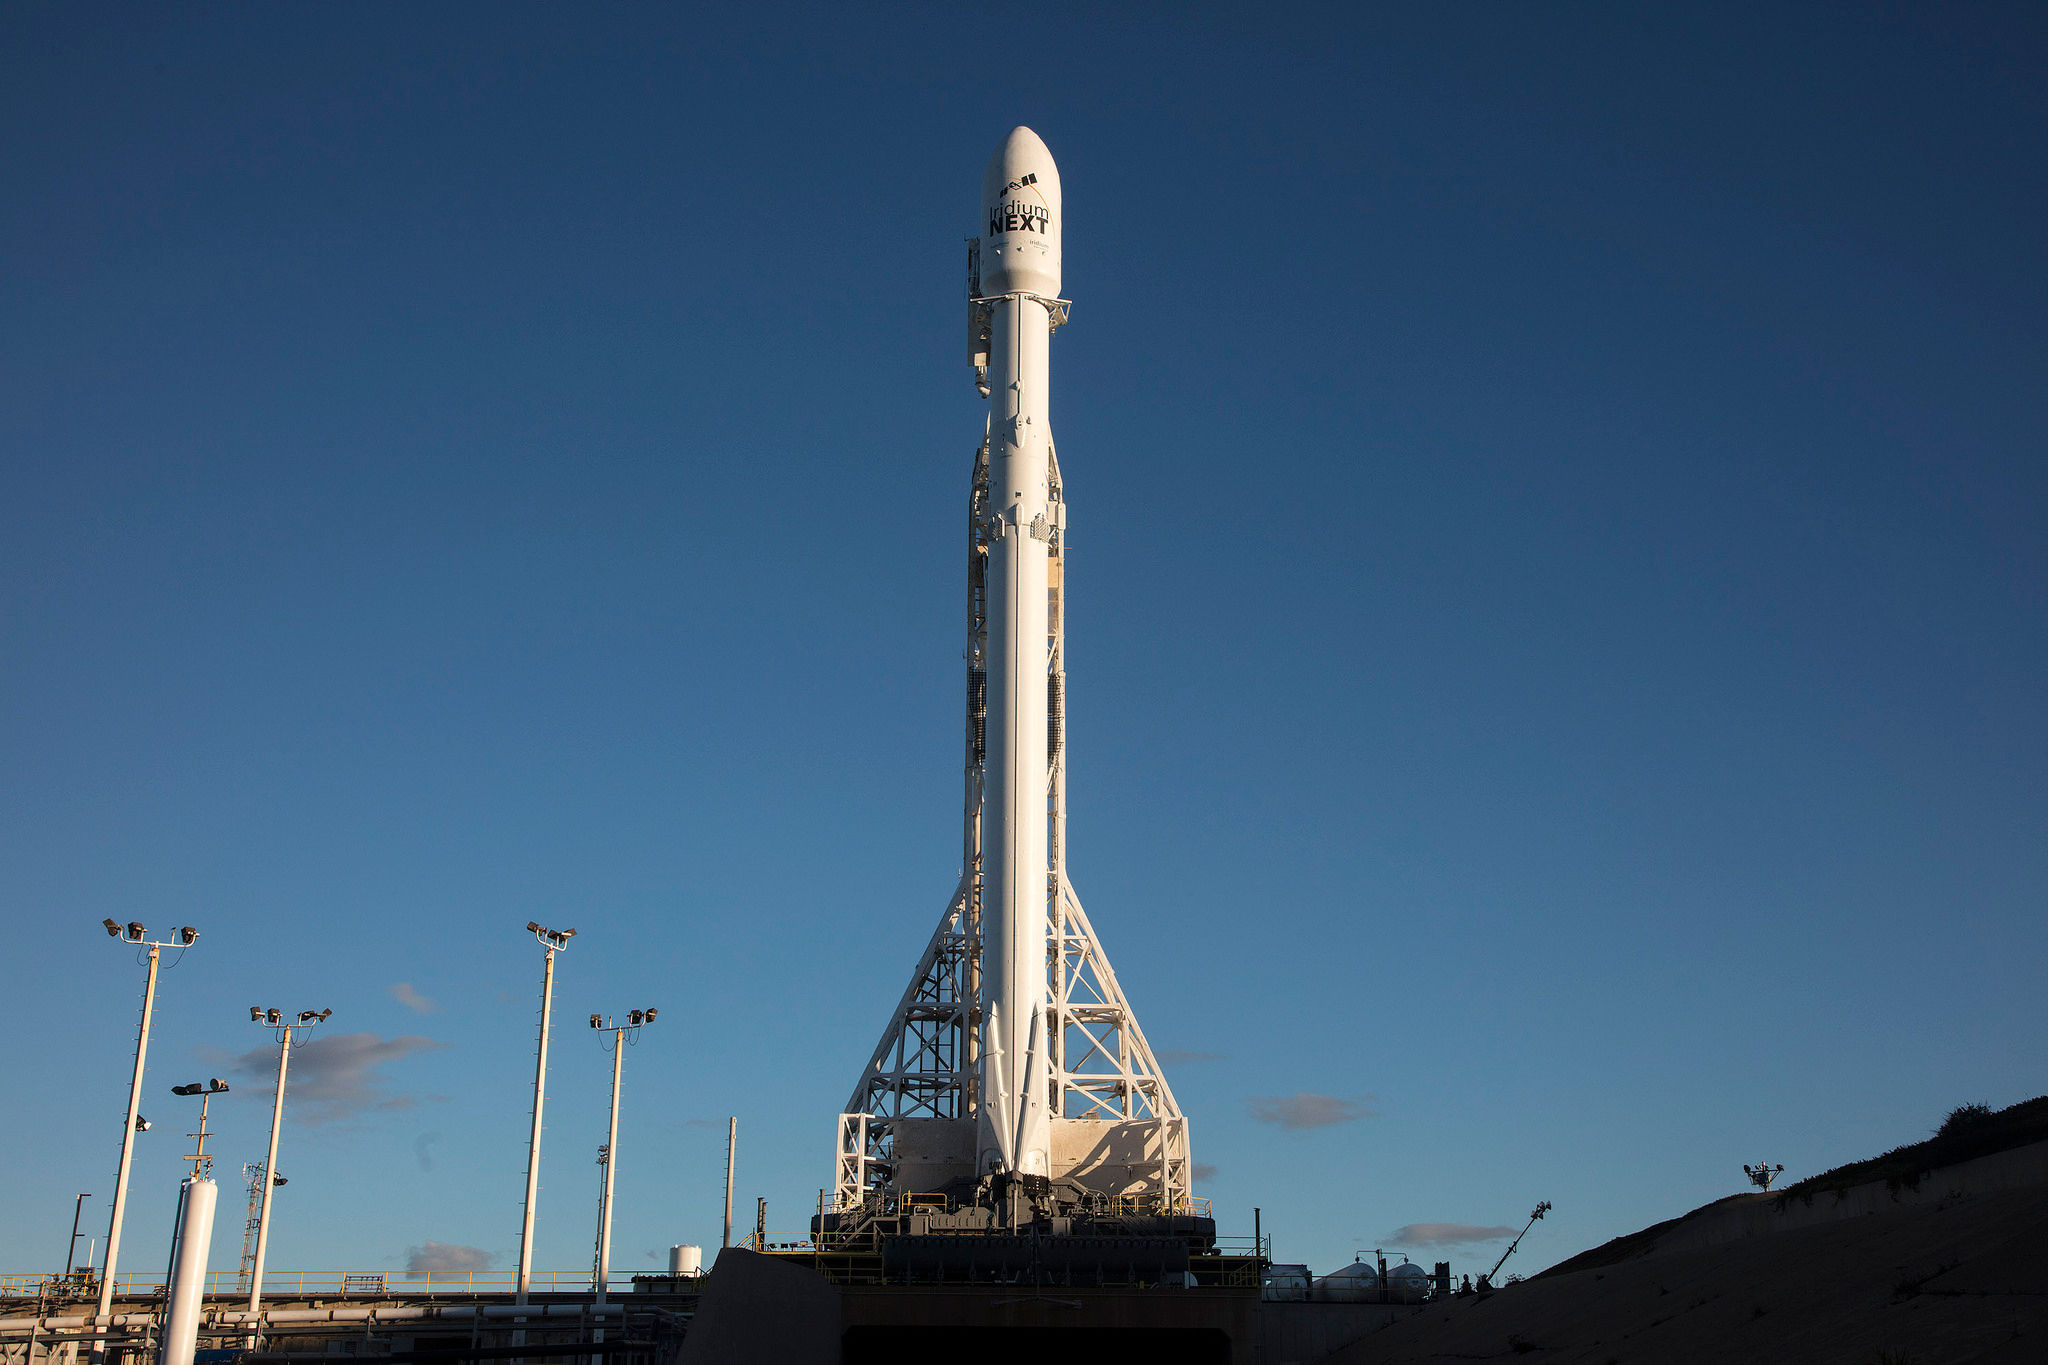 İniş denemesini canlı izleyin: SpaceX uçuşlara geri dönüyor (İniş başarılı)